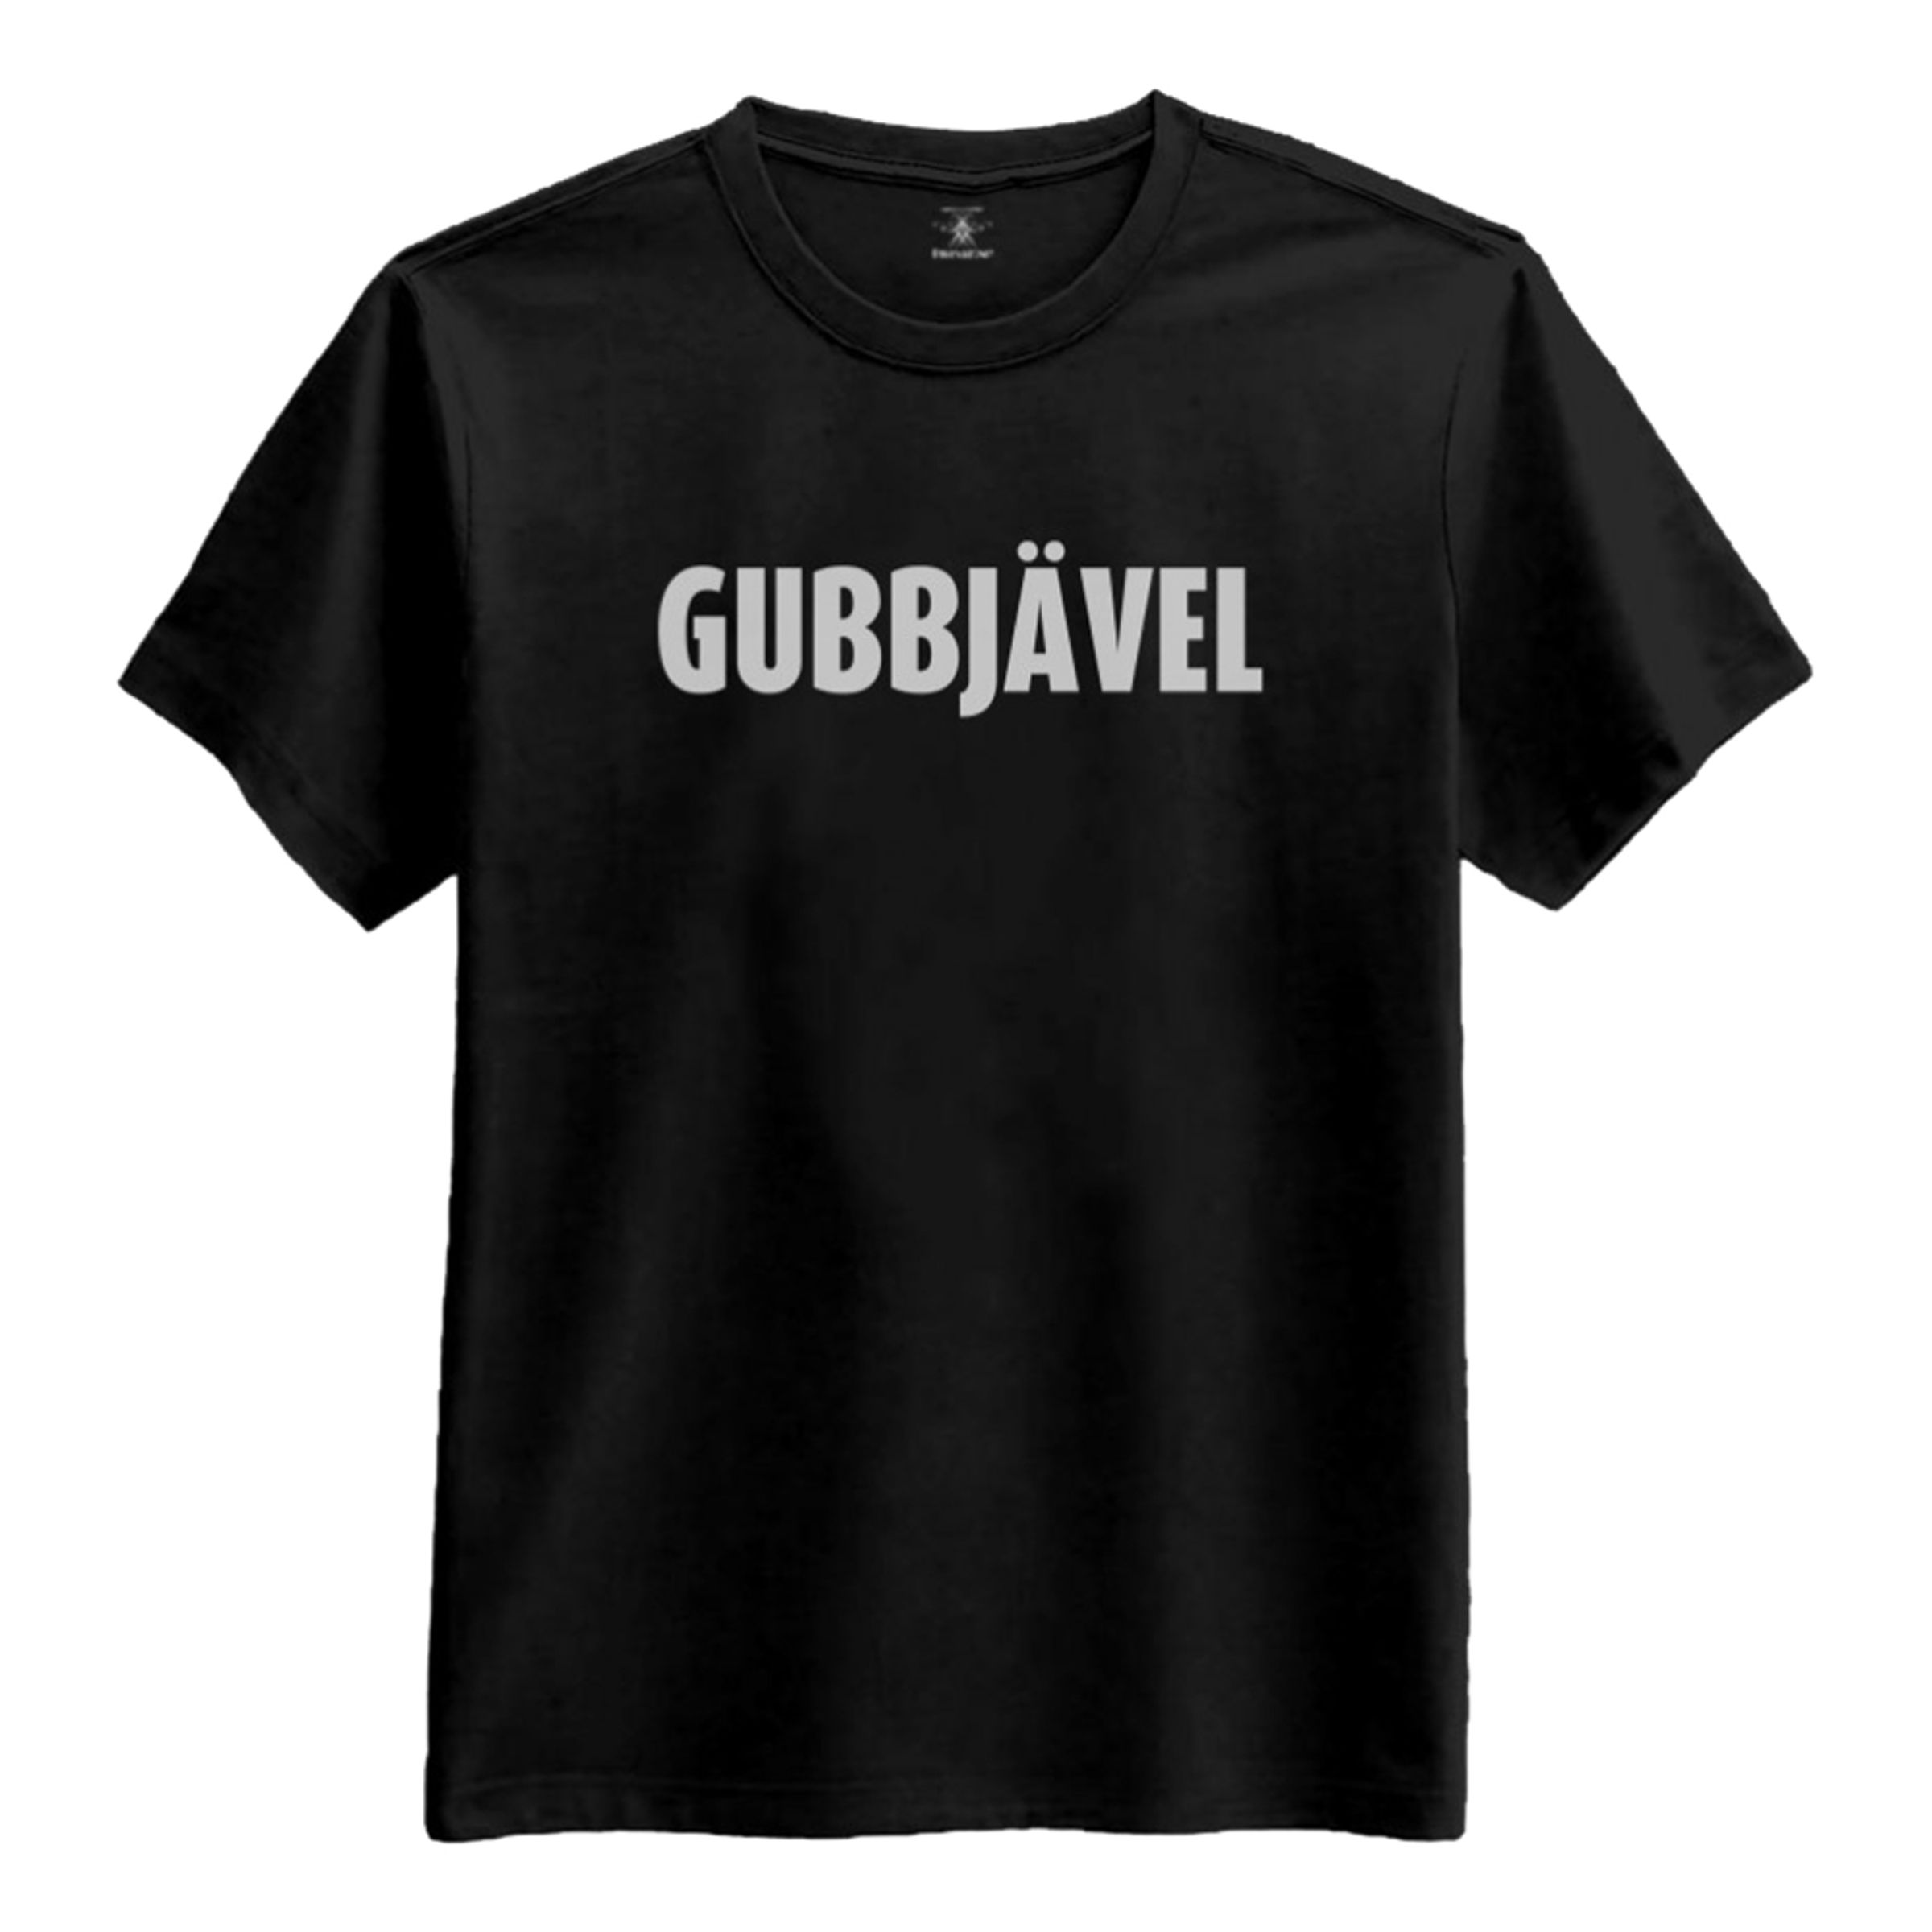 Gubbjävel T-shirt - Medium